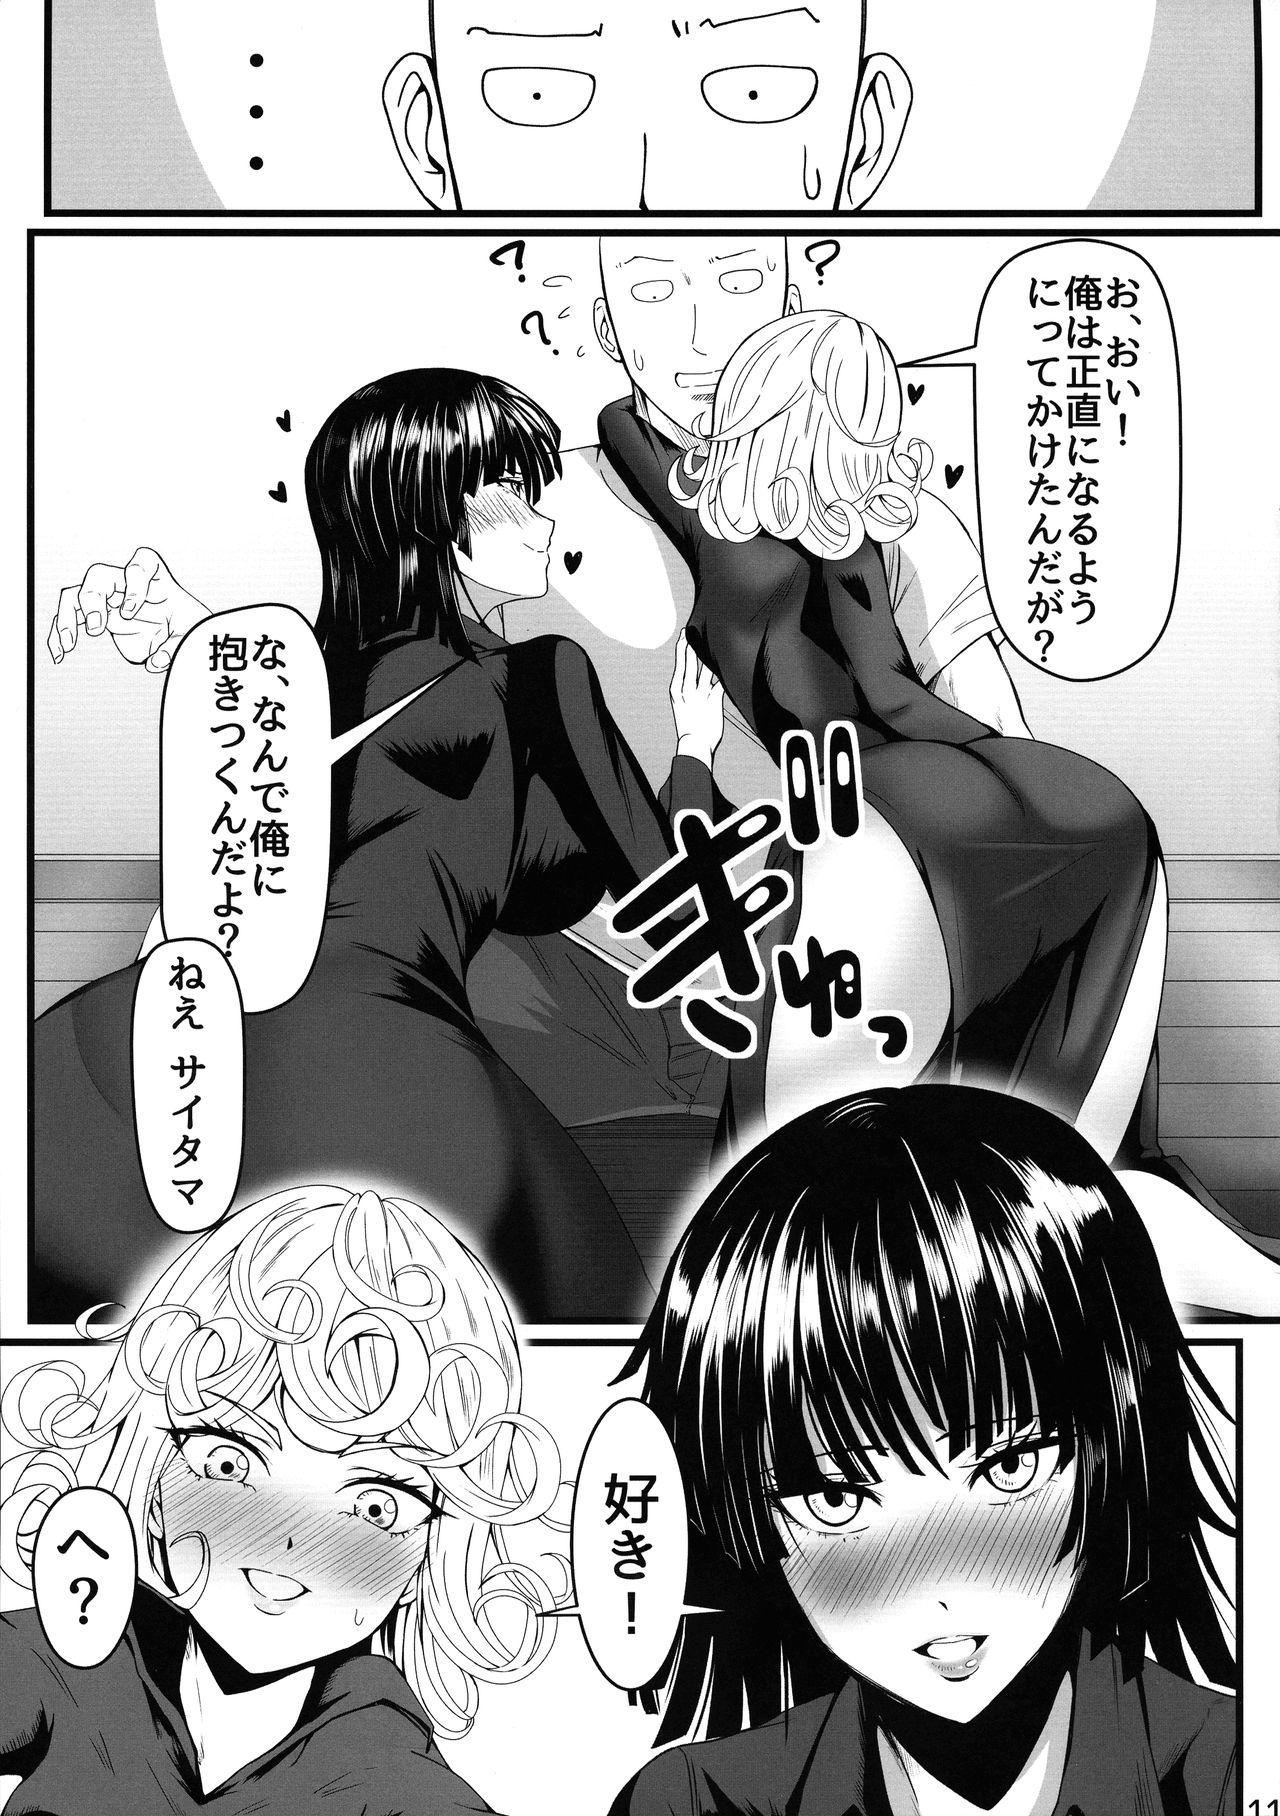 Leaked Dekoboko Love sister 4-gekime - One punch man Gay - Page 11